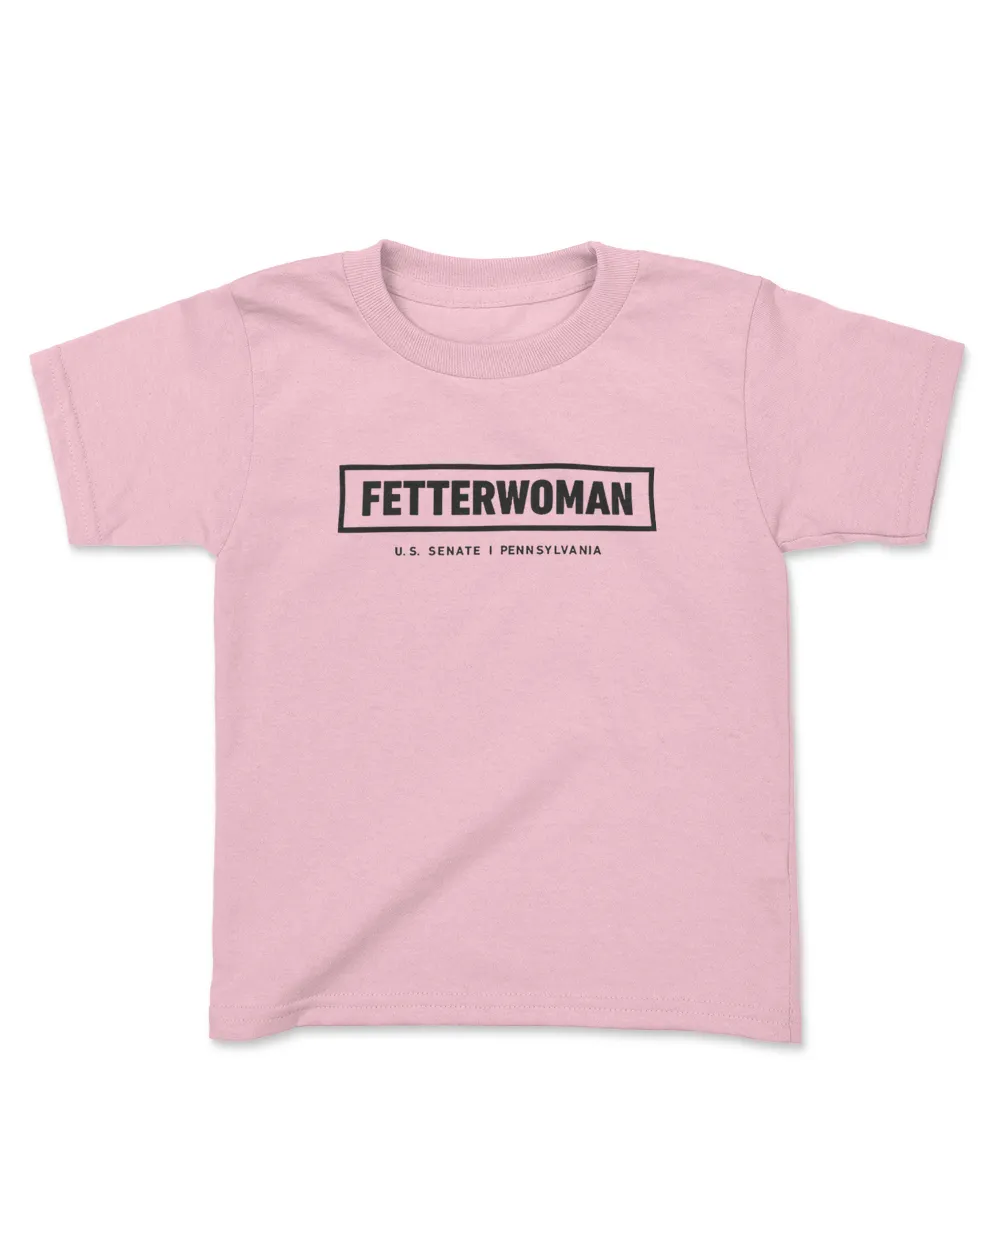 Women for Fetterman shirt